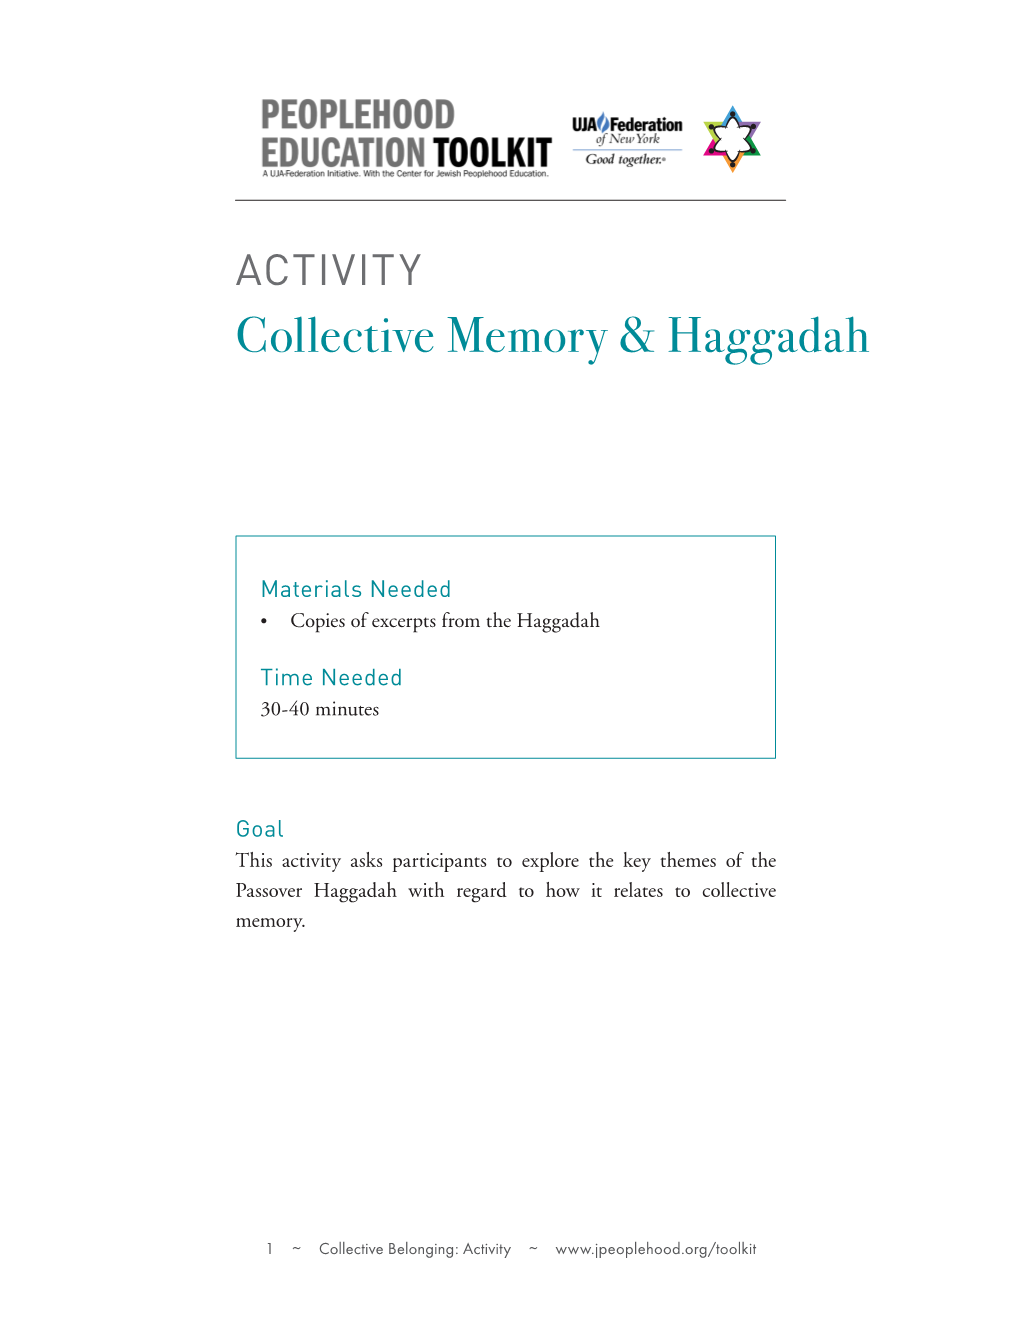 Collective Memory & Haggadah